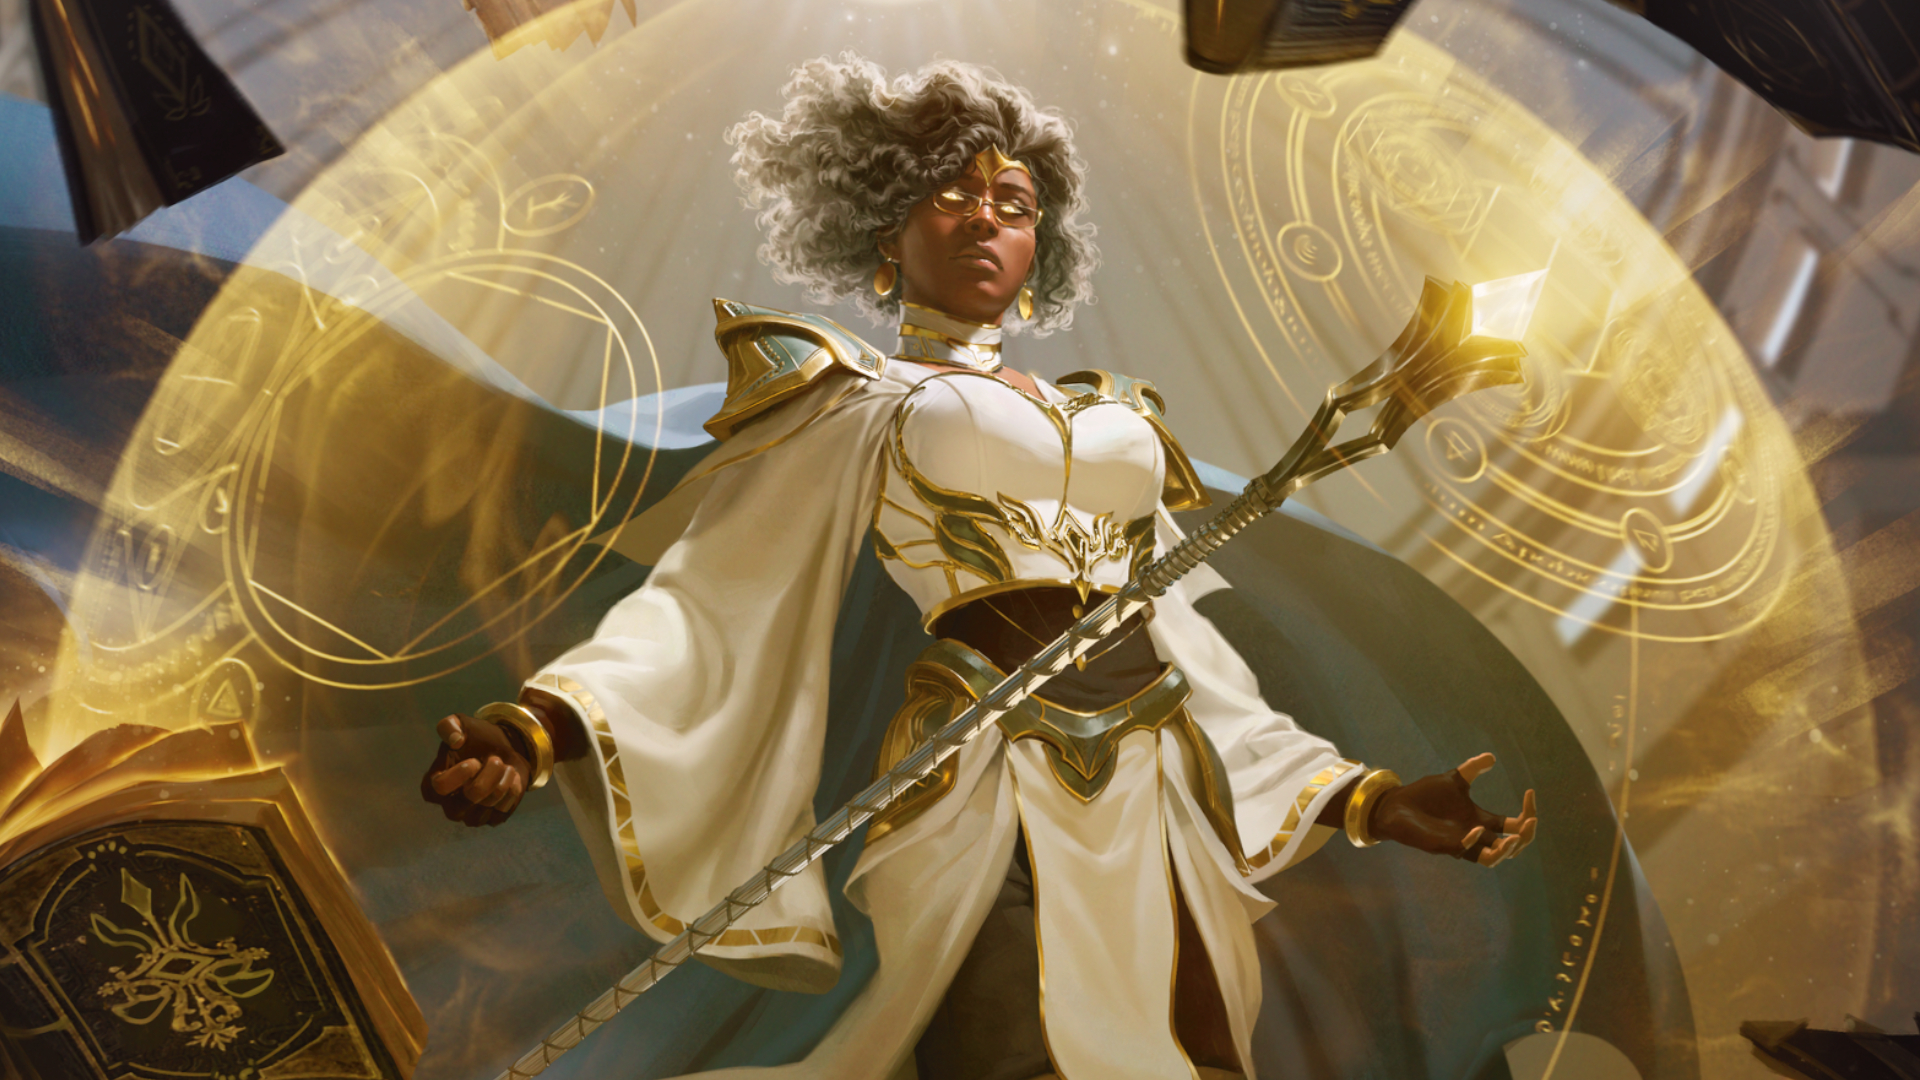 Arte de Dungeons &amp; Dragons com uma mulher com olhos brilhantes a levitar atrás de um escudo mágico